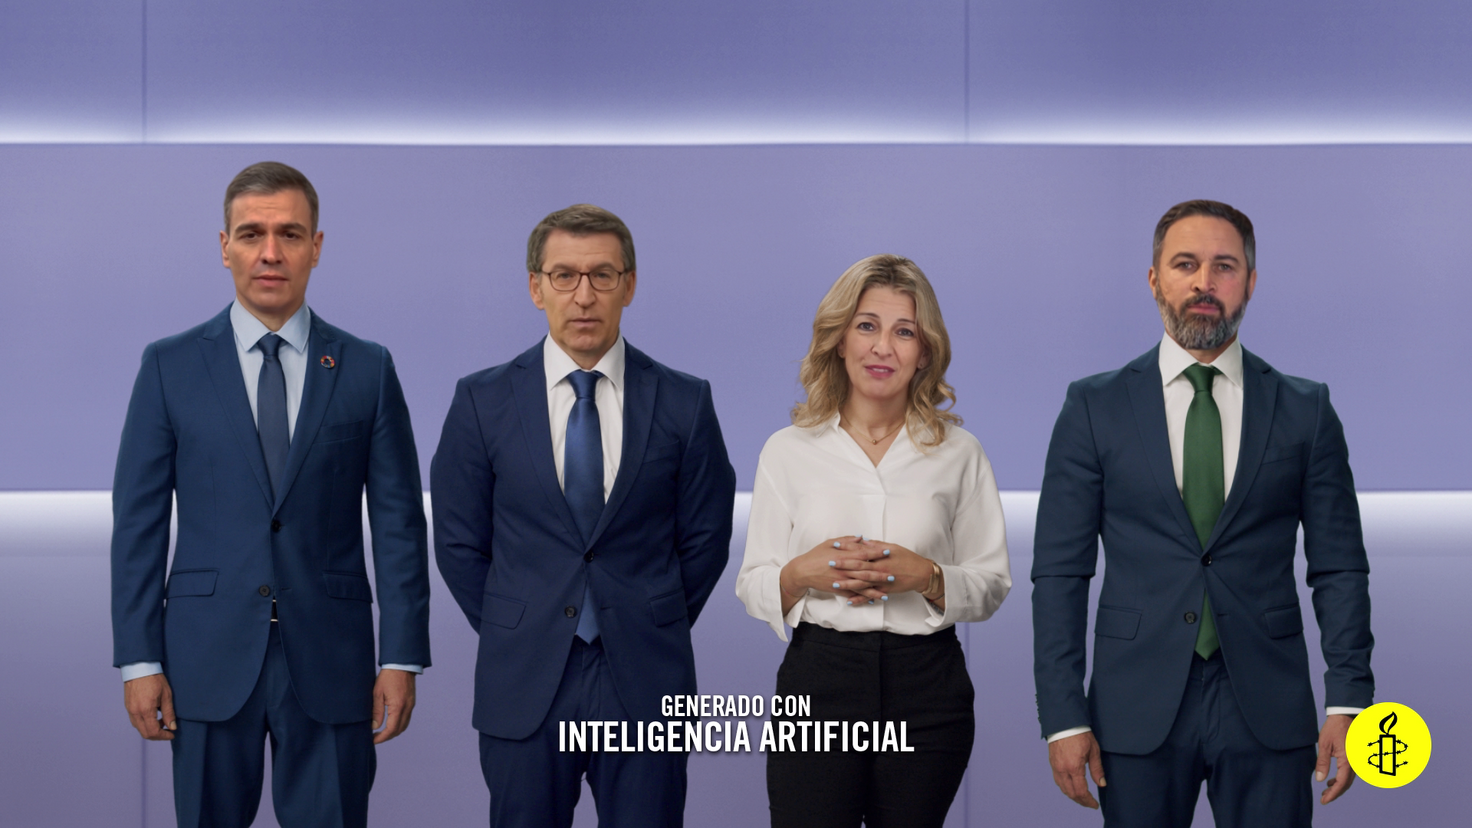 Imagen del video con los cuatro candidatos creado por IA